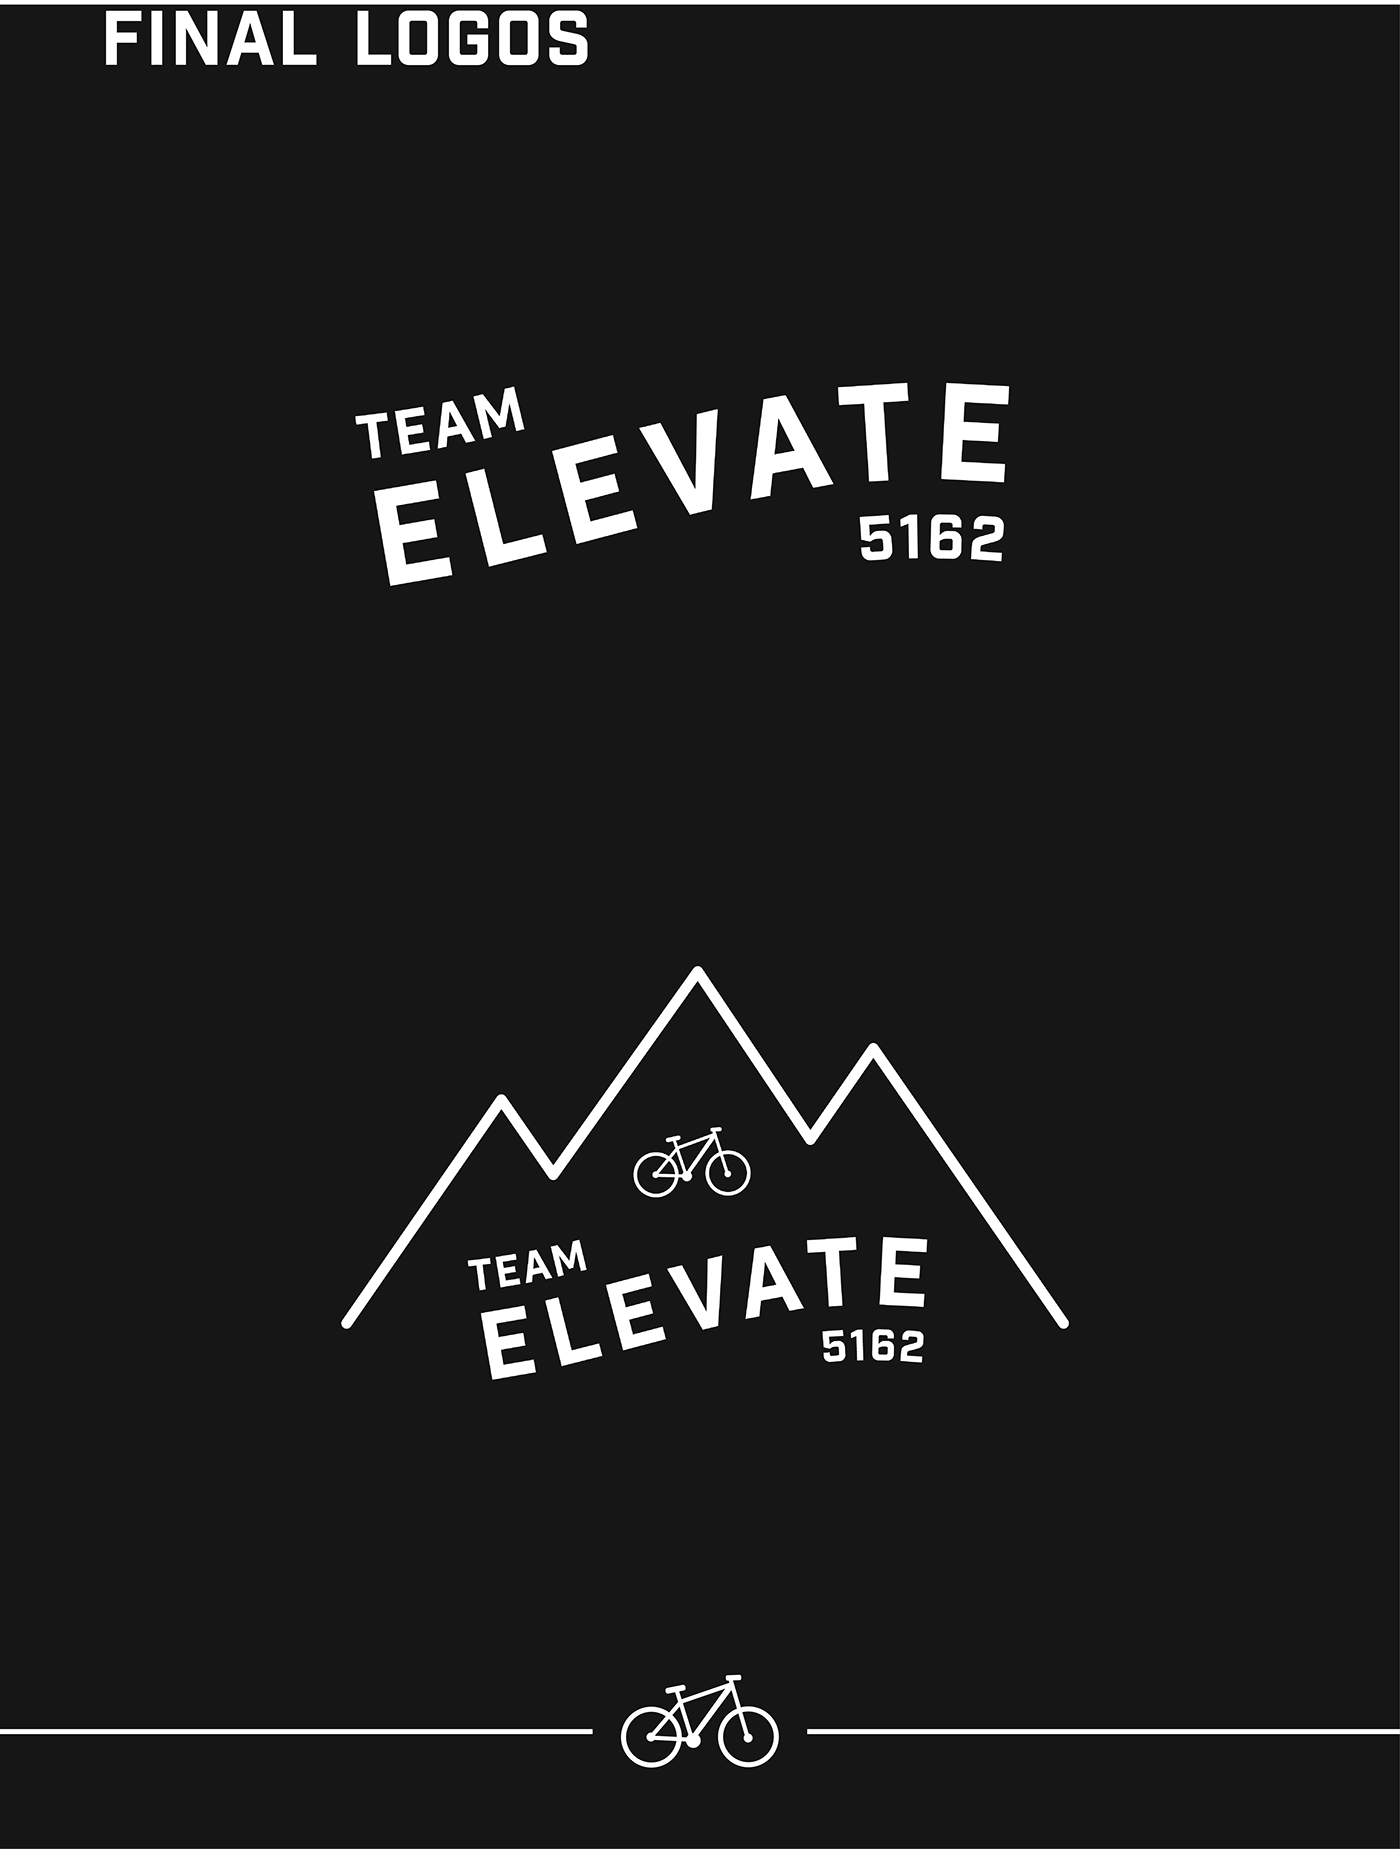 Bike color logo logos sport system team California mountain Ocean